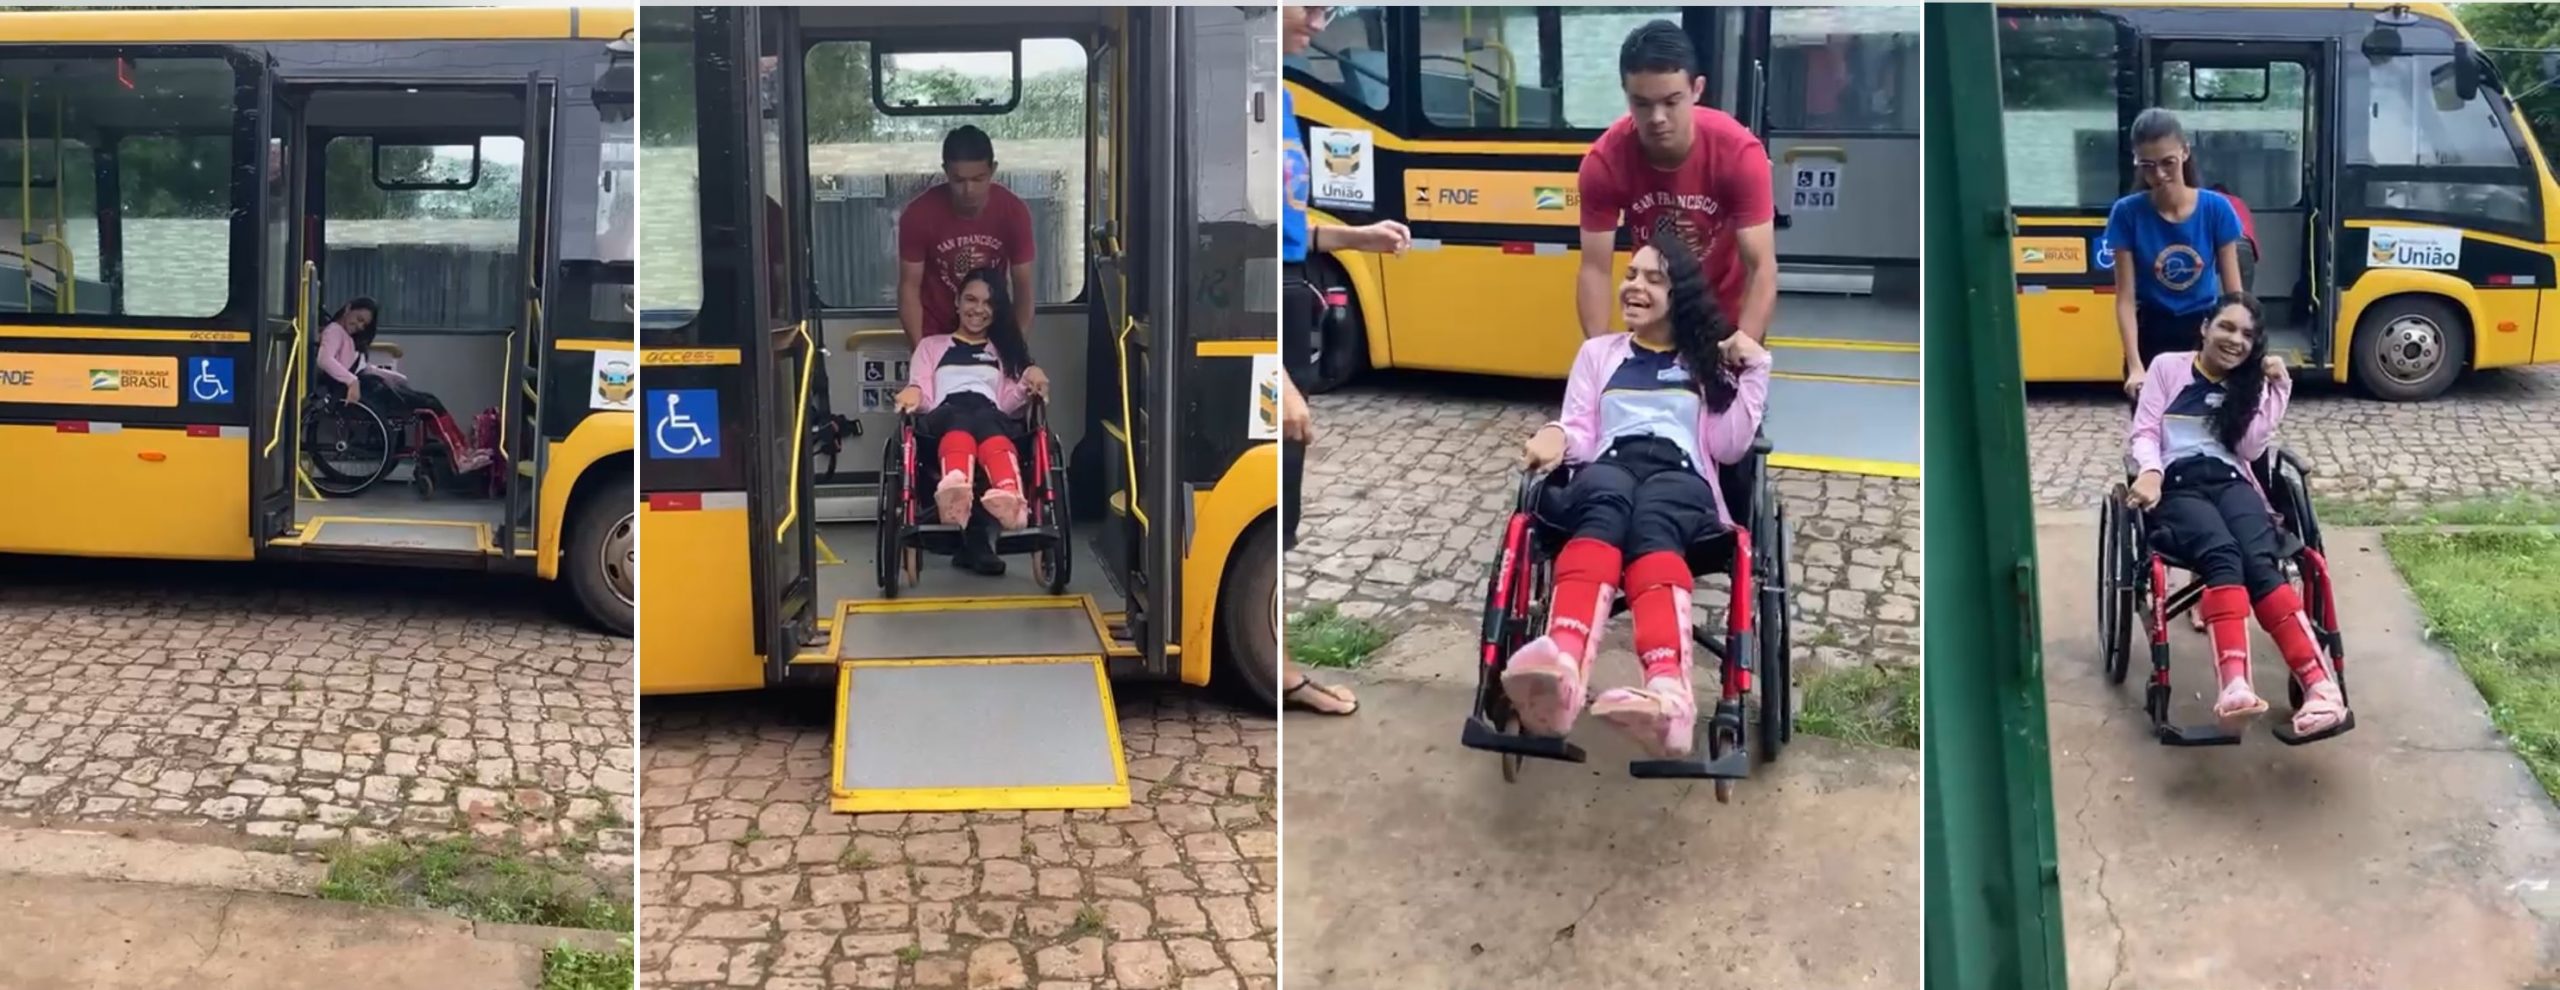 Prefeitura de União garante transporte adaptado a alunos com deficiência